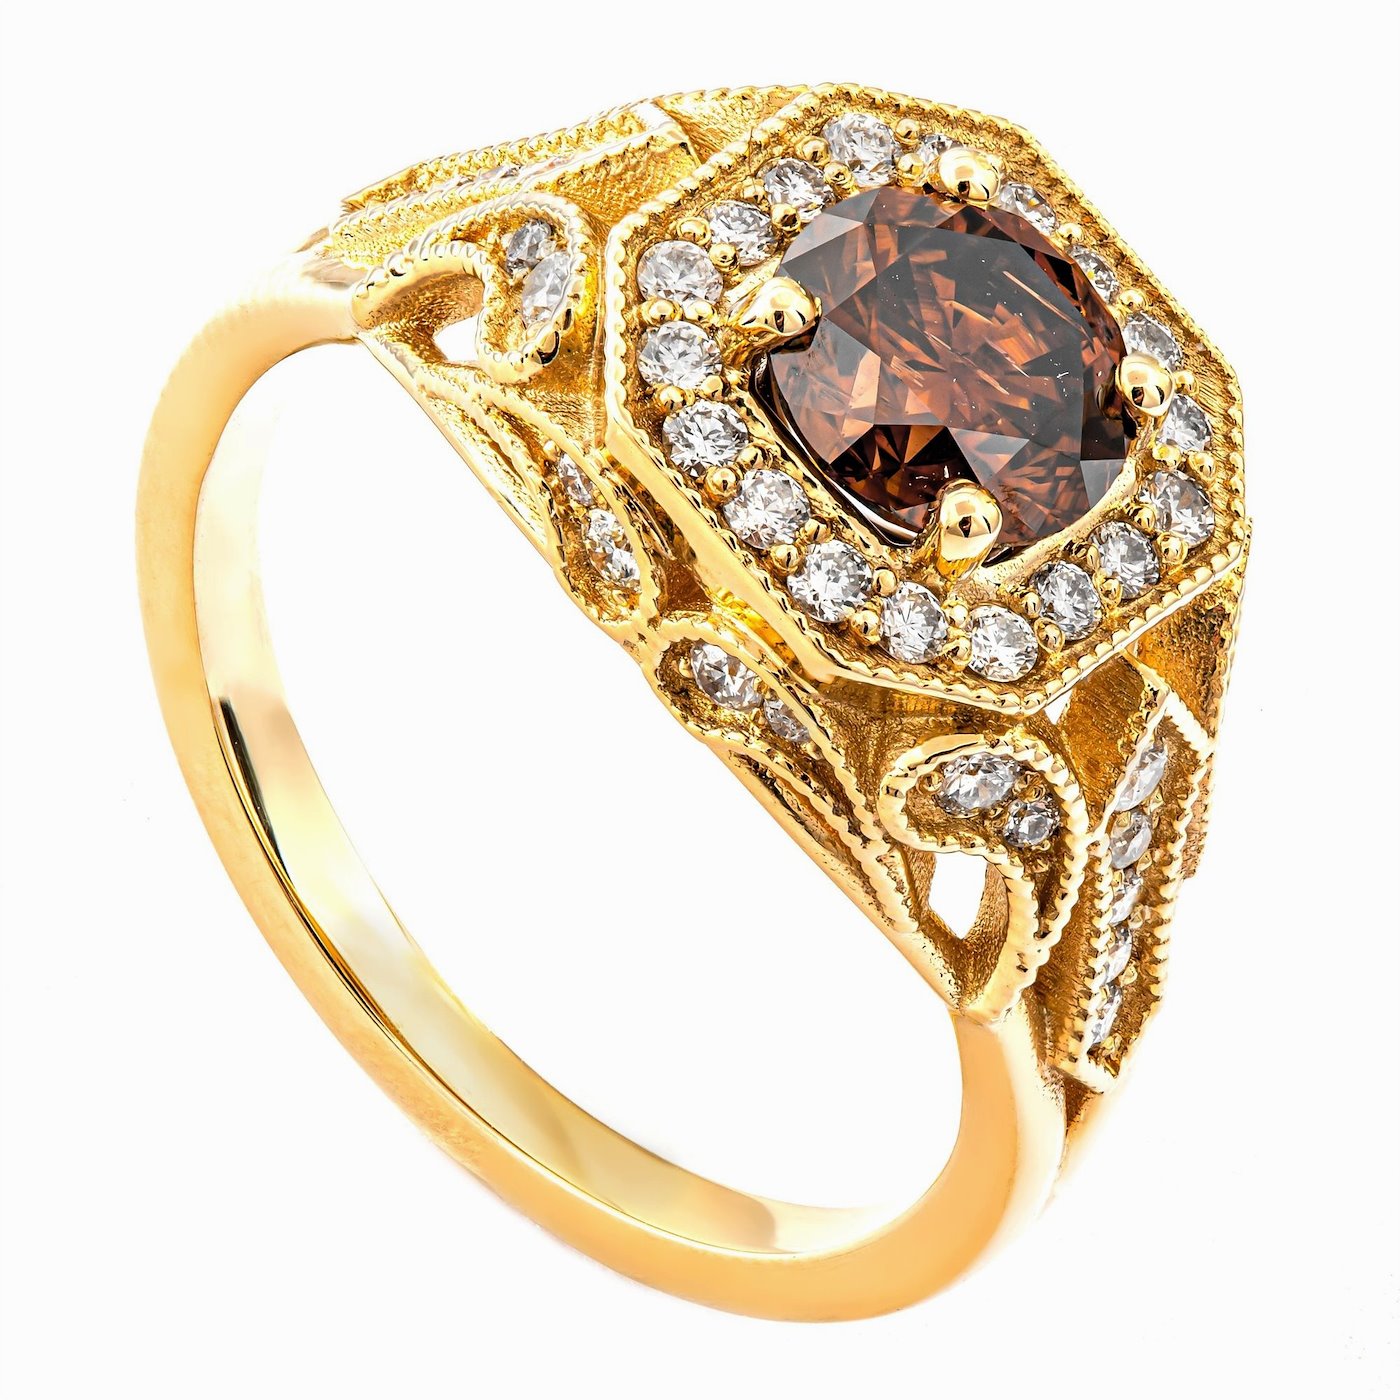 .. - Luxusní prsten s 1,04 Natural Fancy Dark (AA) diamantem a 0,38 ct Diamanty, zlato 585/1000, značeno platnou puncovní značkou "labuť", hrubá hmotnost 4,70 g